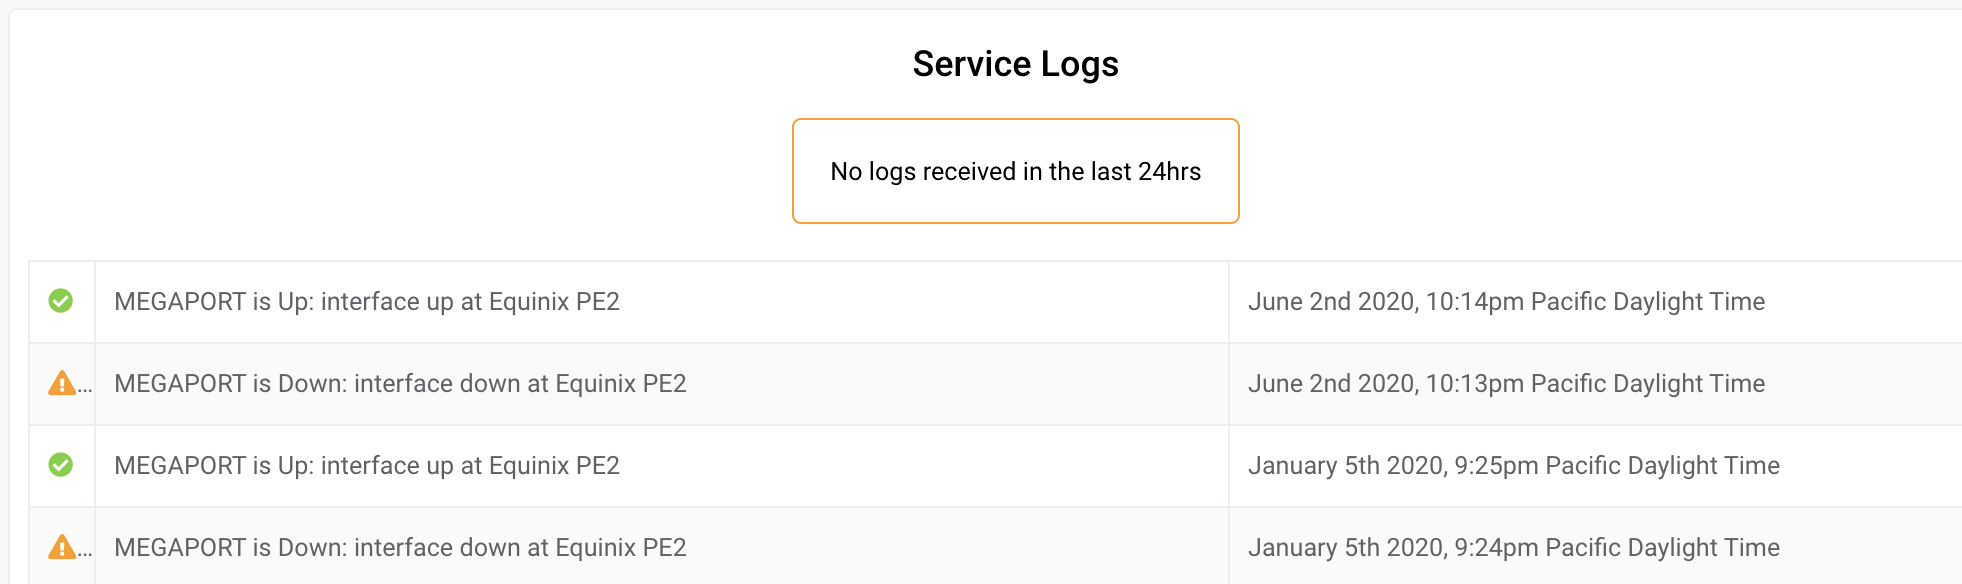 Página Service Logs (Registros de Servicio)